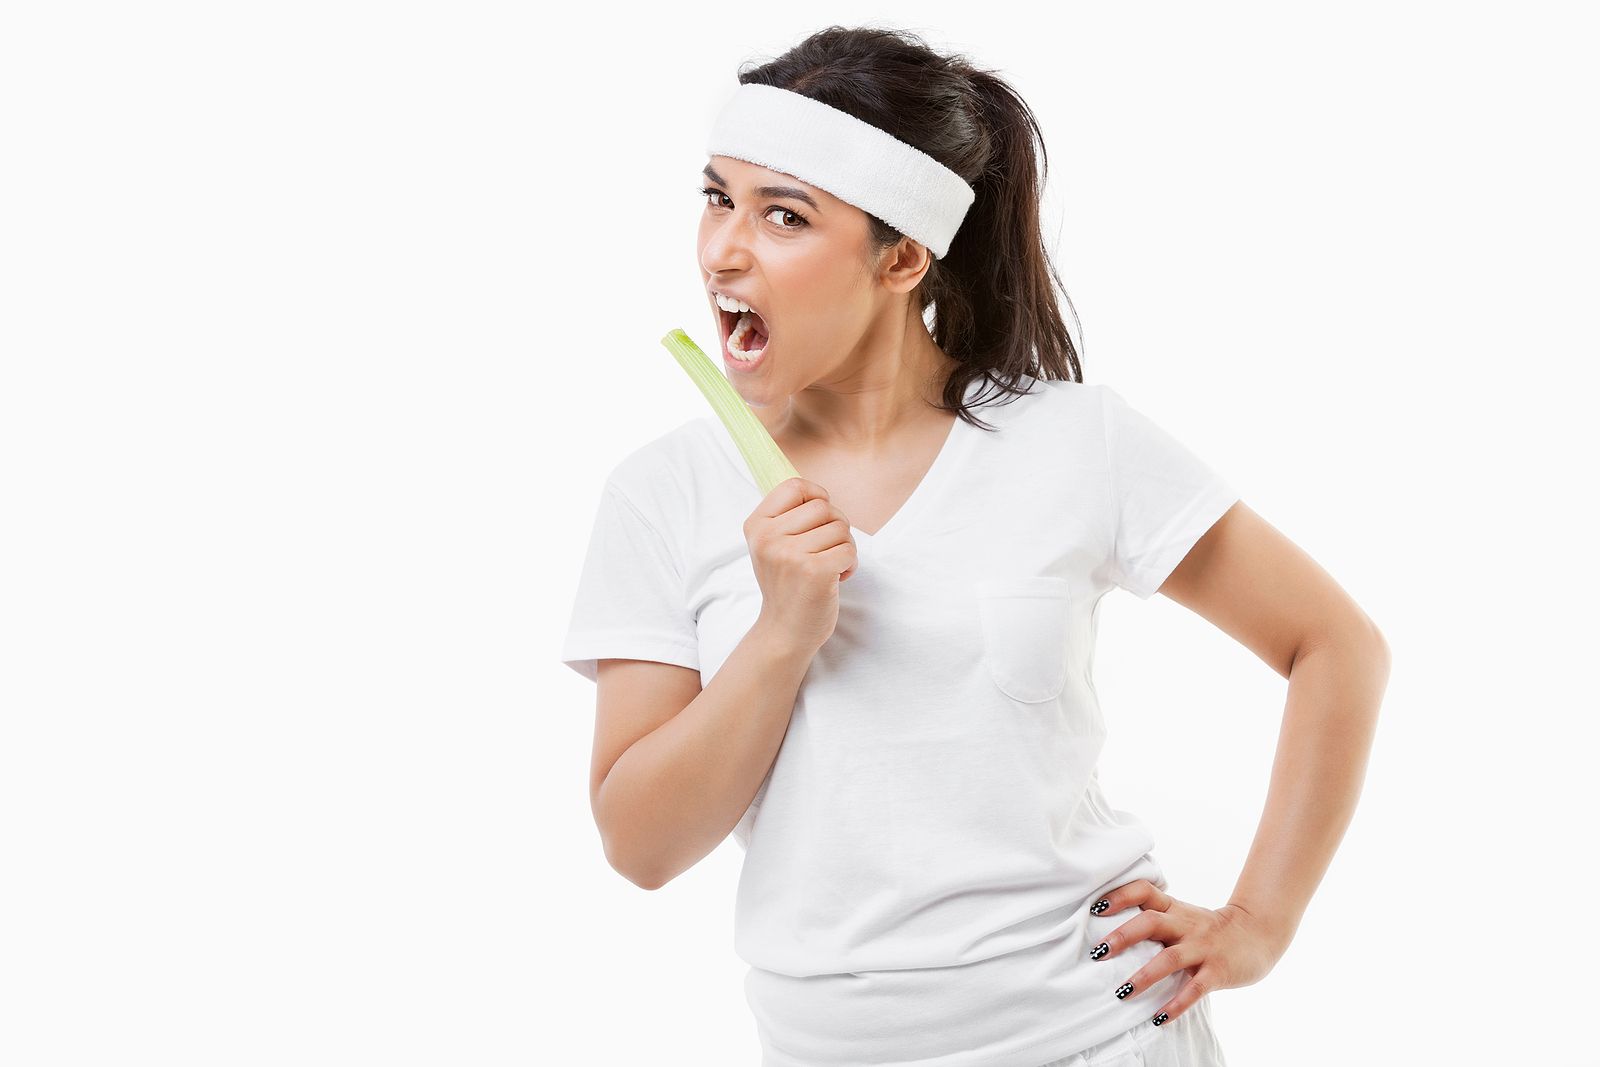 Come fresas y zanahorias para blanquear los dientes Foto: bigstock